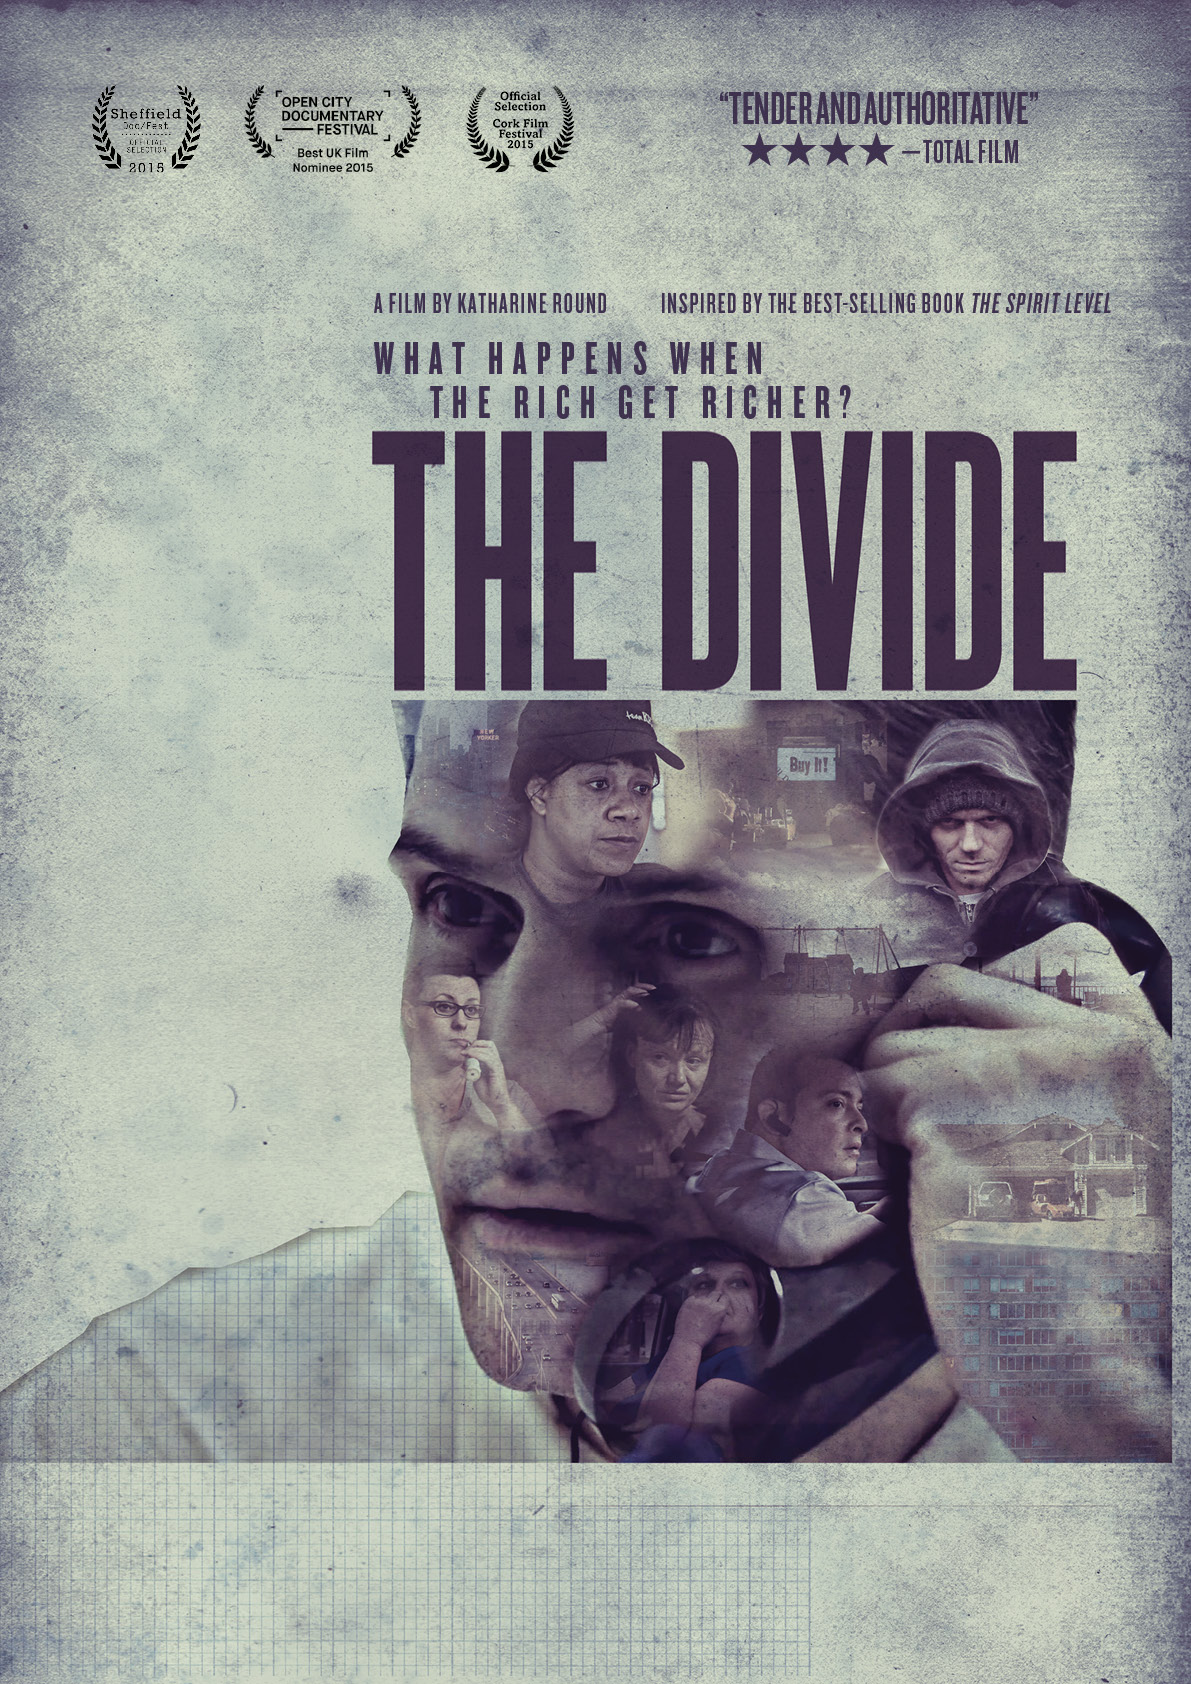 The Divide – film screening